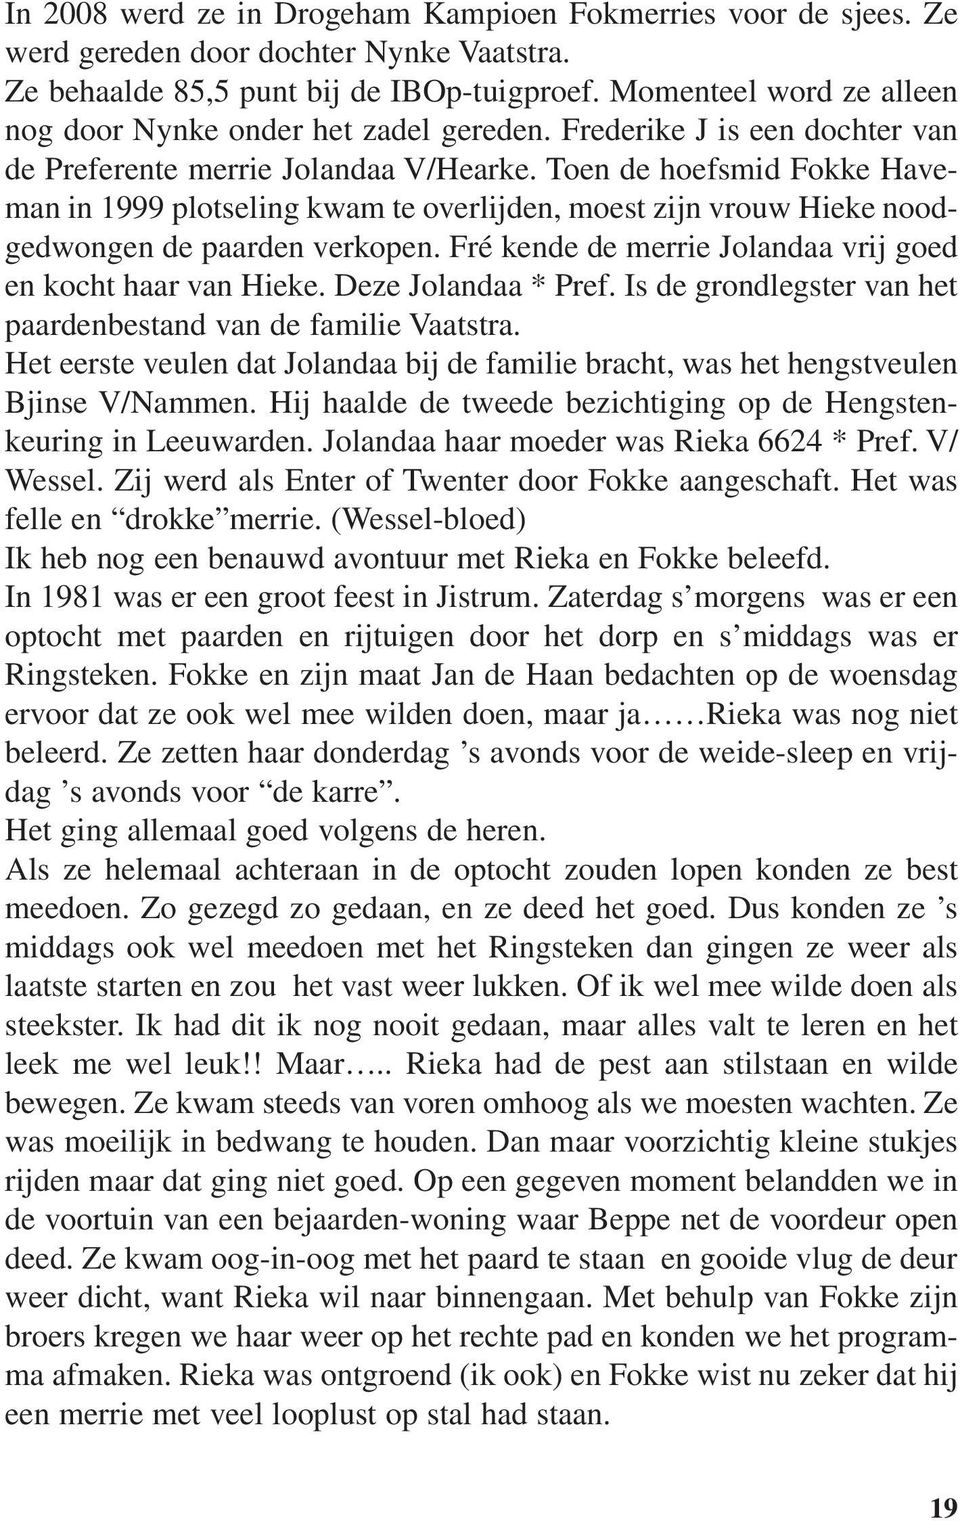 Toen de hoefsmid Fokke Haveman in 1999 plotseling kwam te overlijden, moest zijn vrouw Hieke noodgedwongen de paarden verkopen. Fré kende de merrie Jolandaa vrij goed en kocht haar van Hieke.